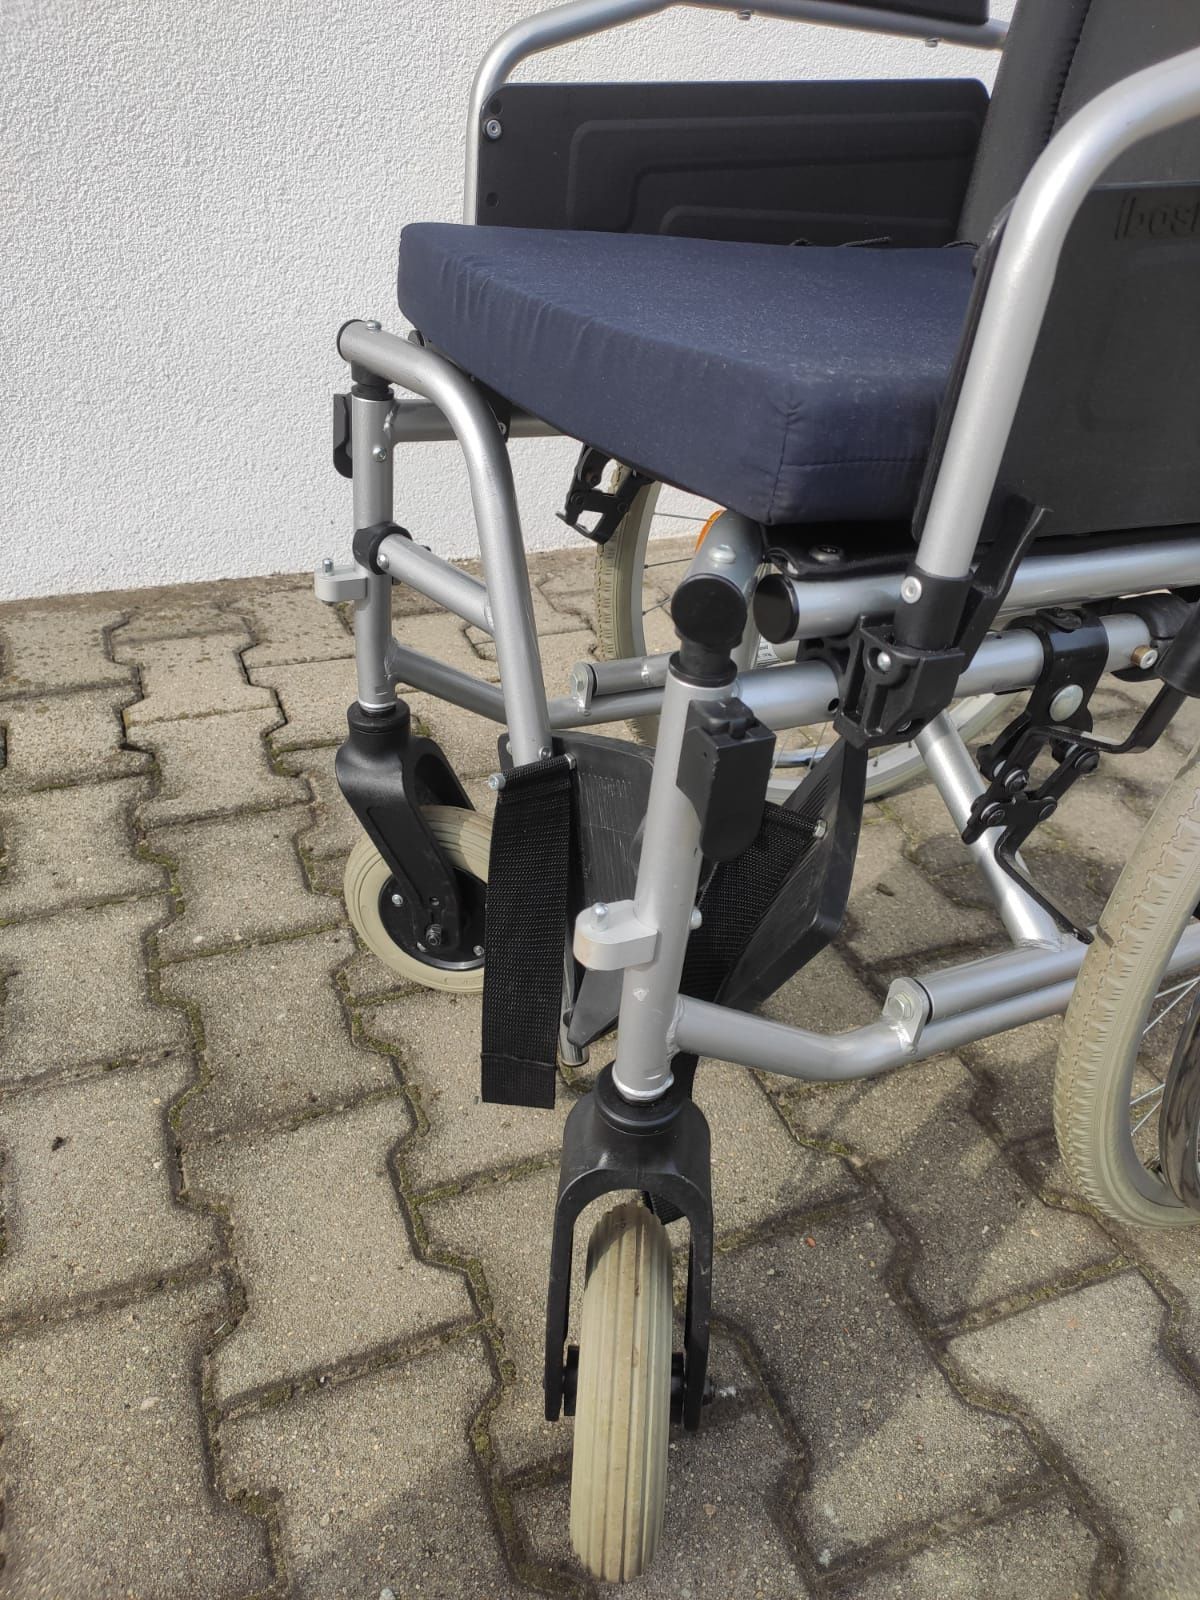 Nowy wózek inwalidzki składany,z hamulcami postojowymi przy kołach